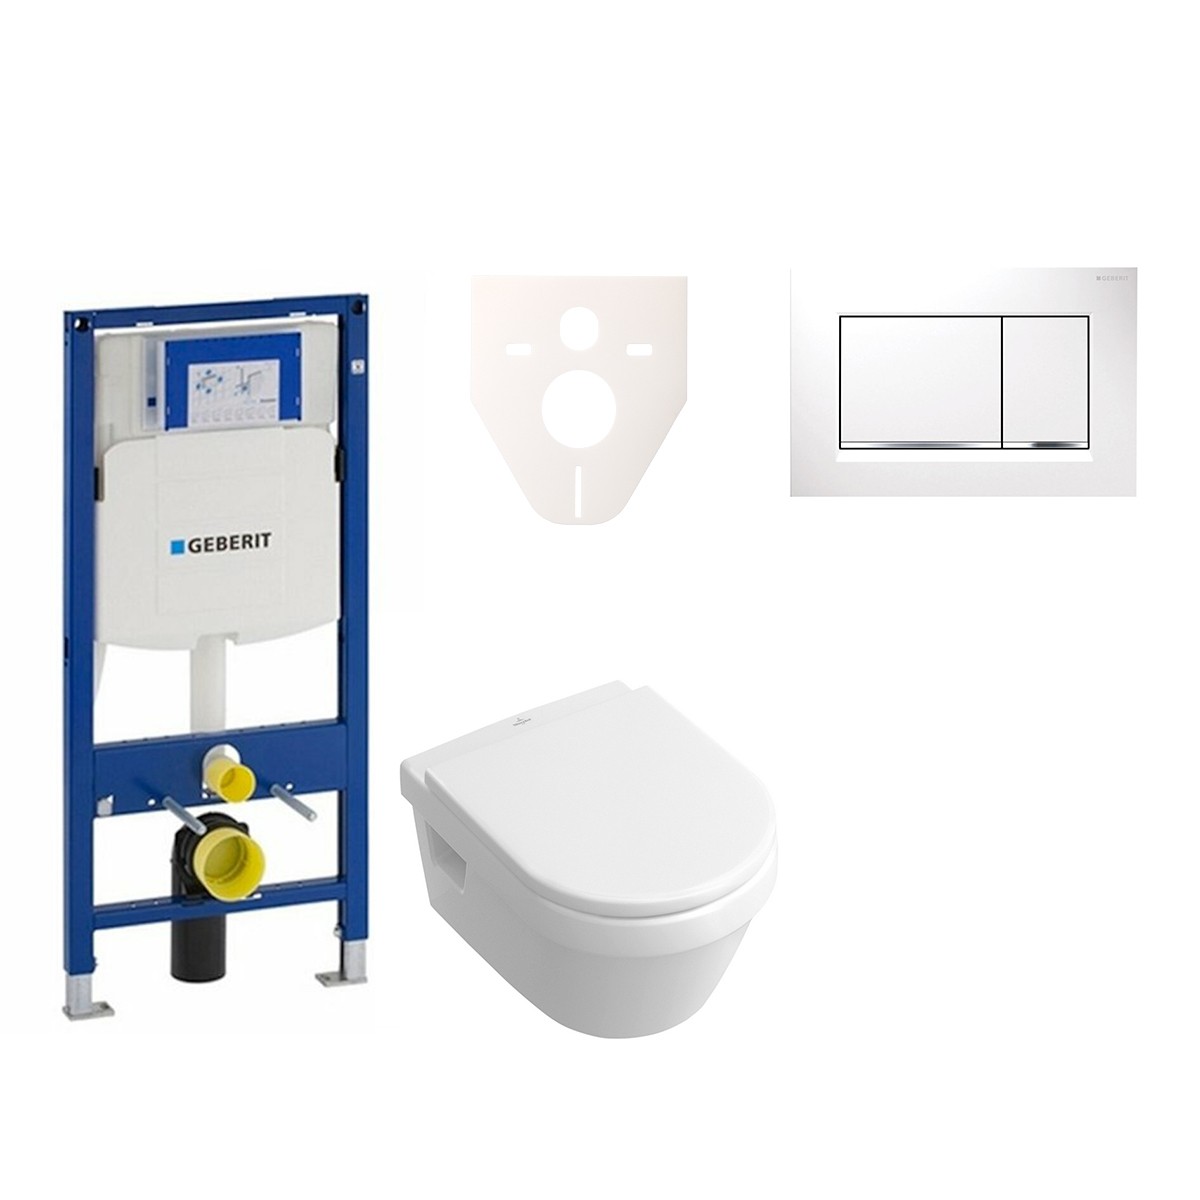 Cenově zvýhodněný závěsný WC set Geberit do lehkých stěn / předstěnová montáž+ WC Villeroy & Boch Omnia Architectura 111.300.00.5NB5 Villeroy & Boch